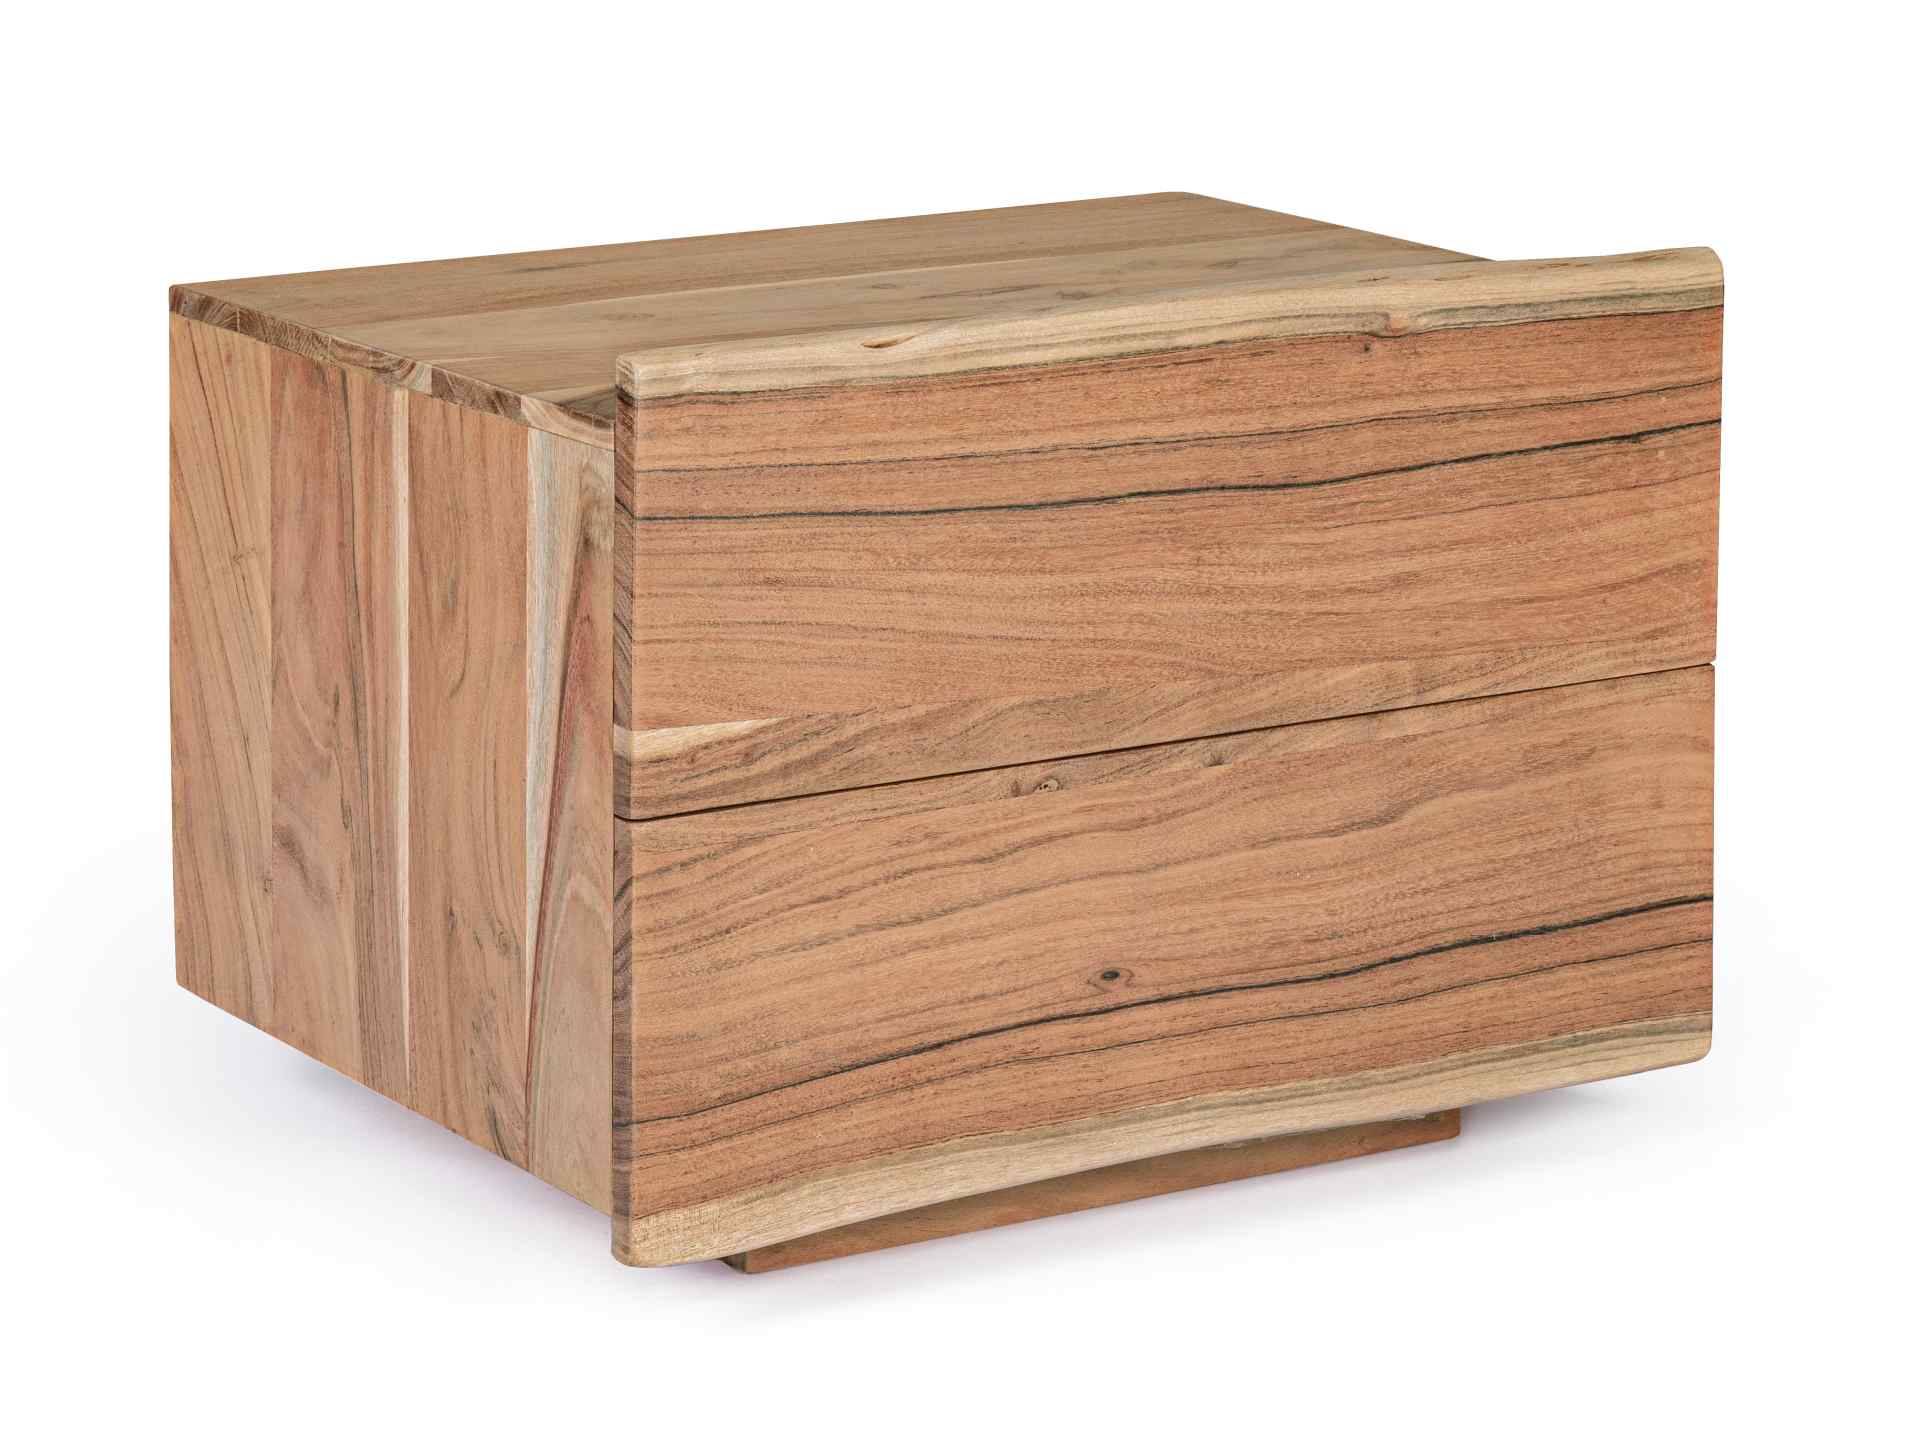 Der Nachttisch Aron überzeugt mit seinem klassischen Design. Gefertigt wurde er aus Akazienholz, welches einen natürlichen Farbton besitzt. Das Gestell ist auch aus Akazienholz. Der Nachttisch verfügt über zwei Schubladen. Die Breite beträgt 60 cm.